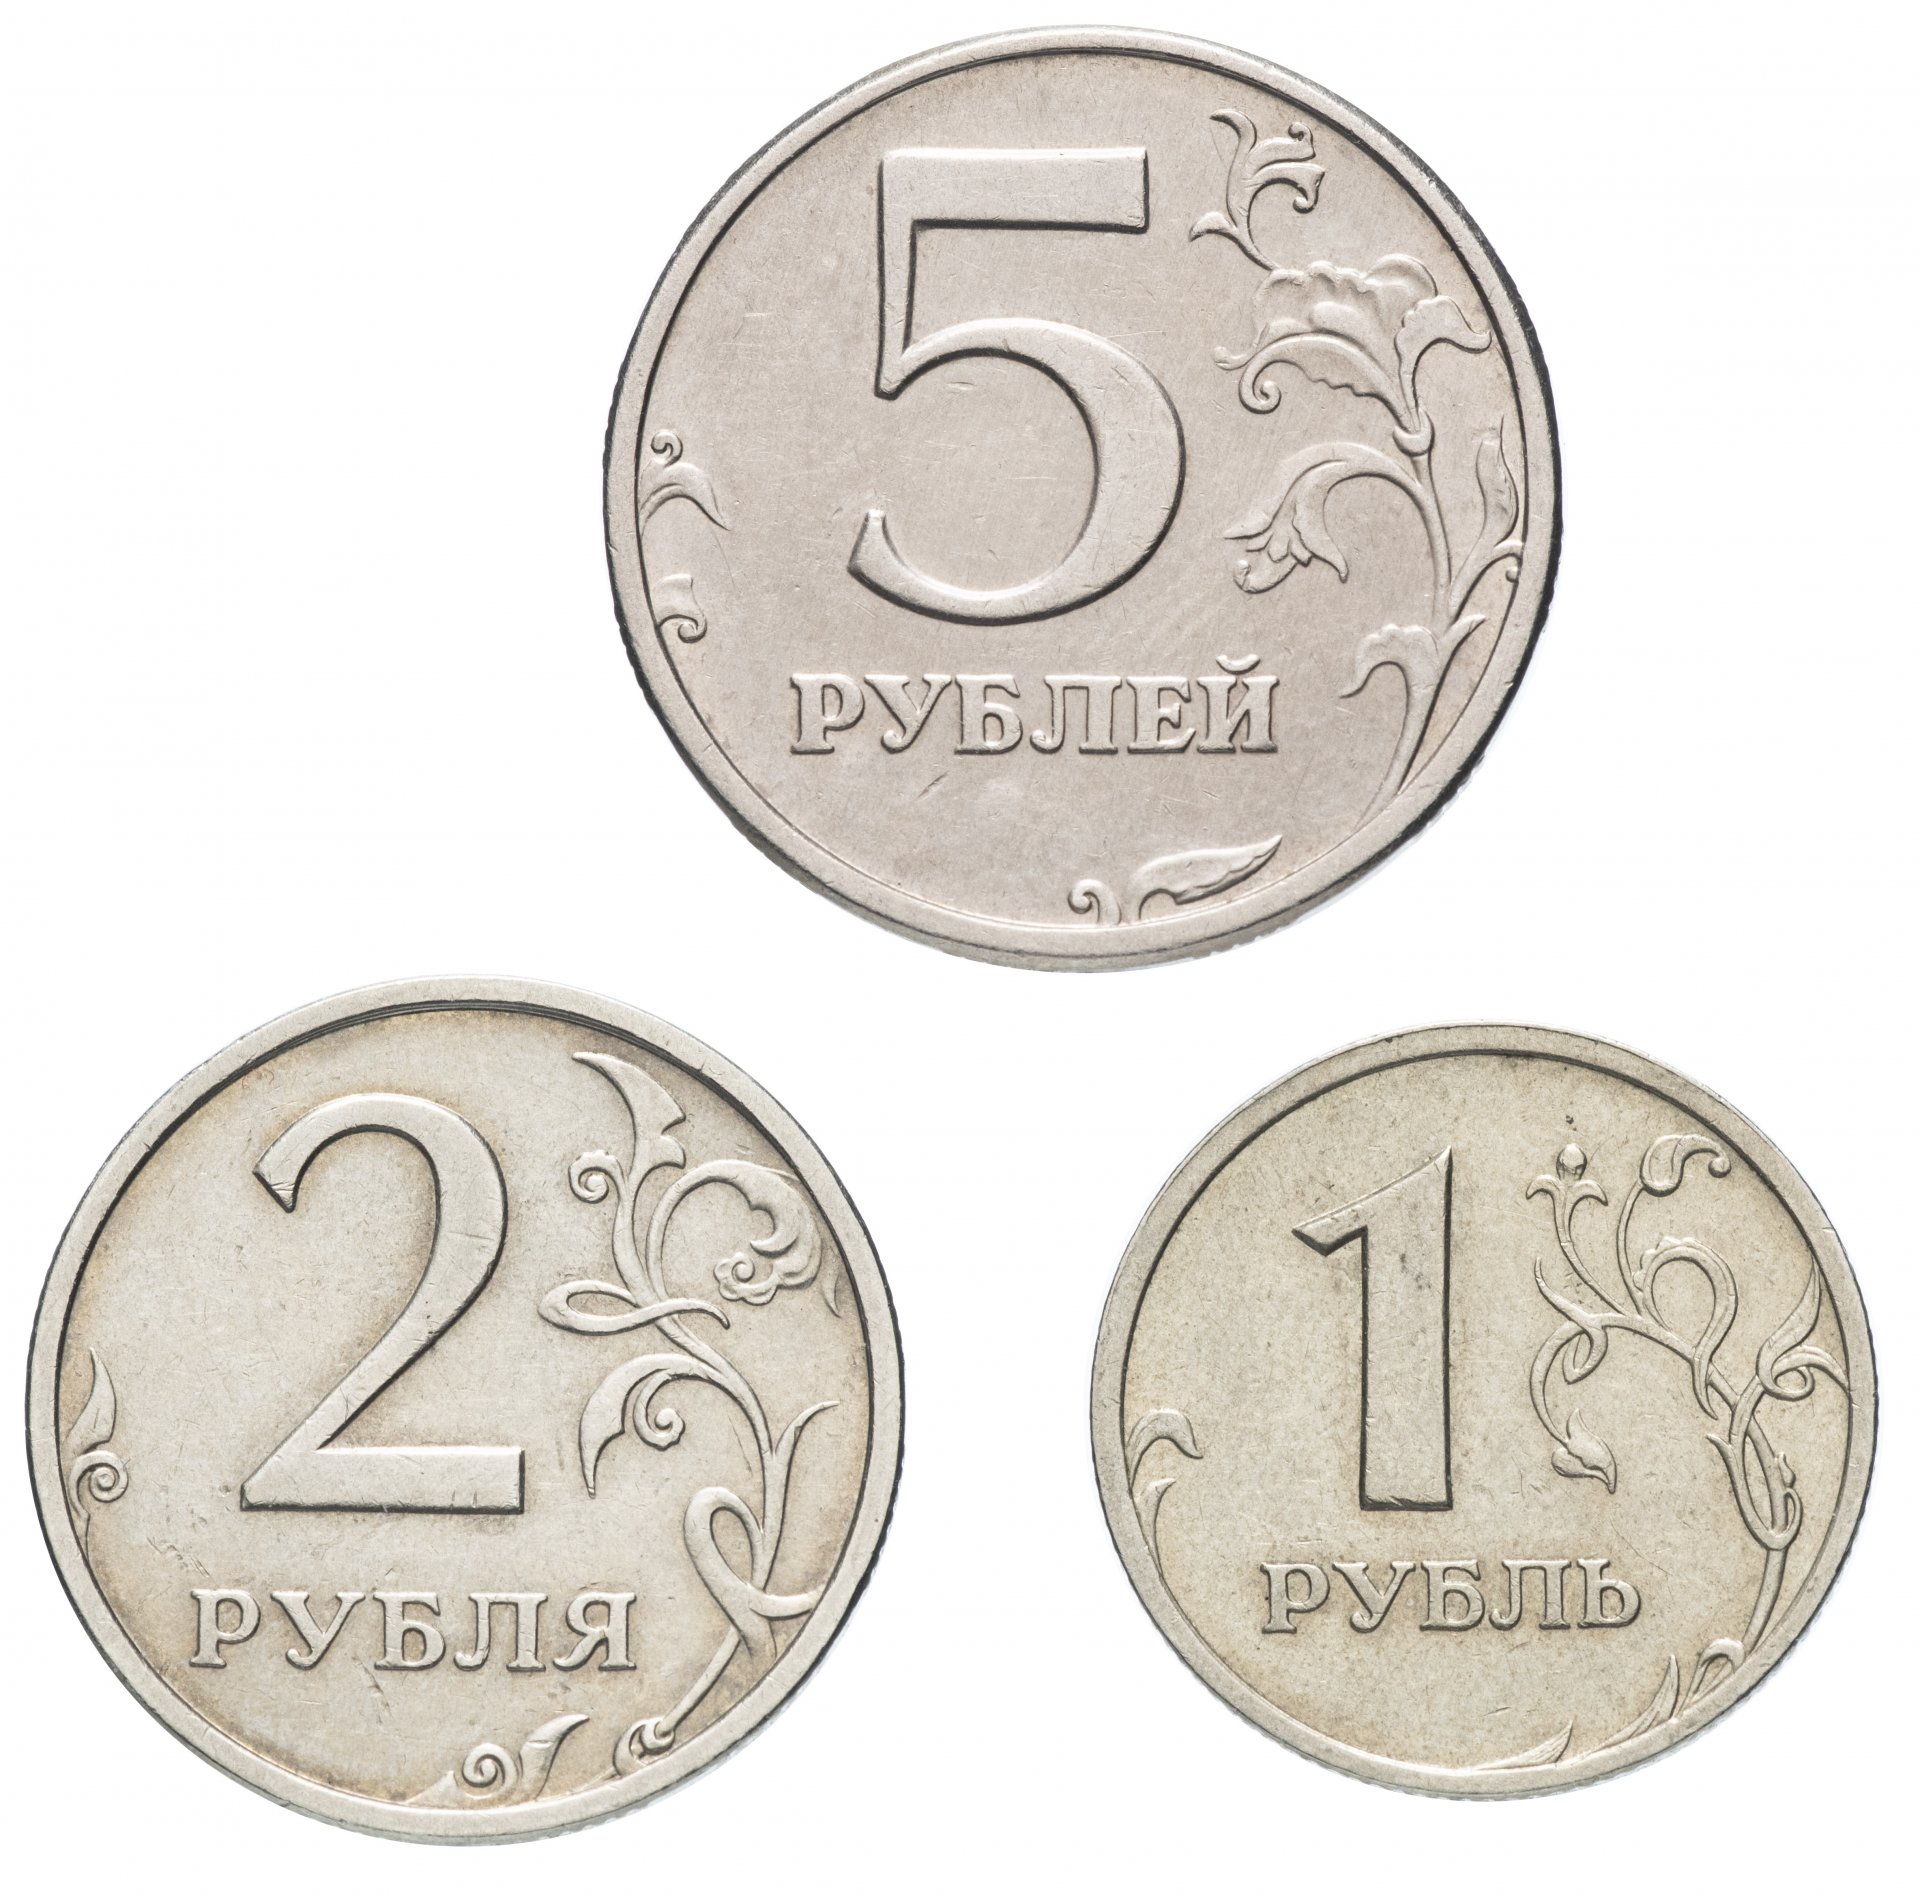 5 рублей заказать. Монеты для детей. Монеты для распечатывания. Монета 5 рублей. Монеты для дошкольников.